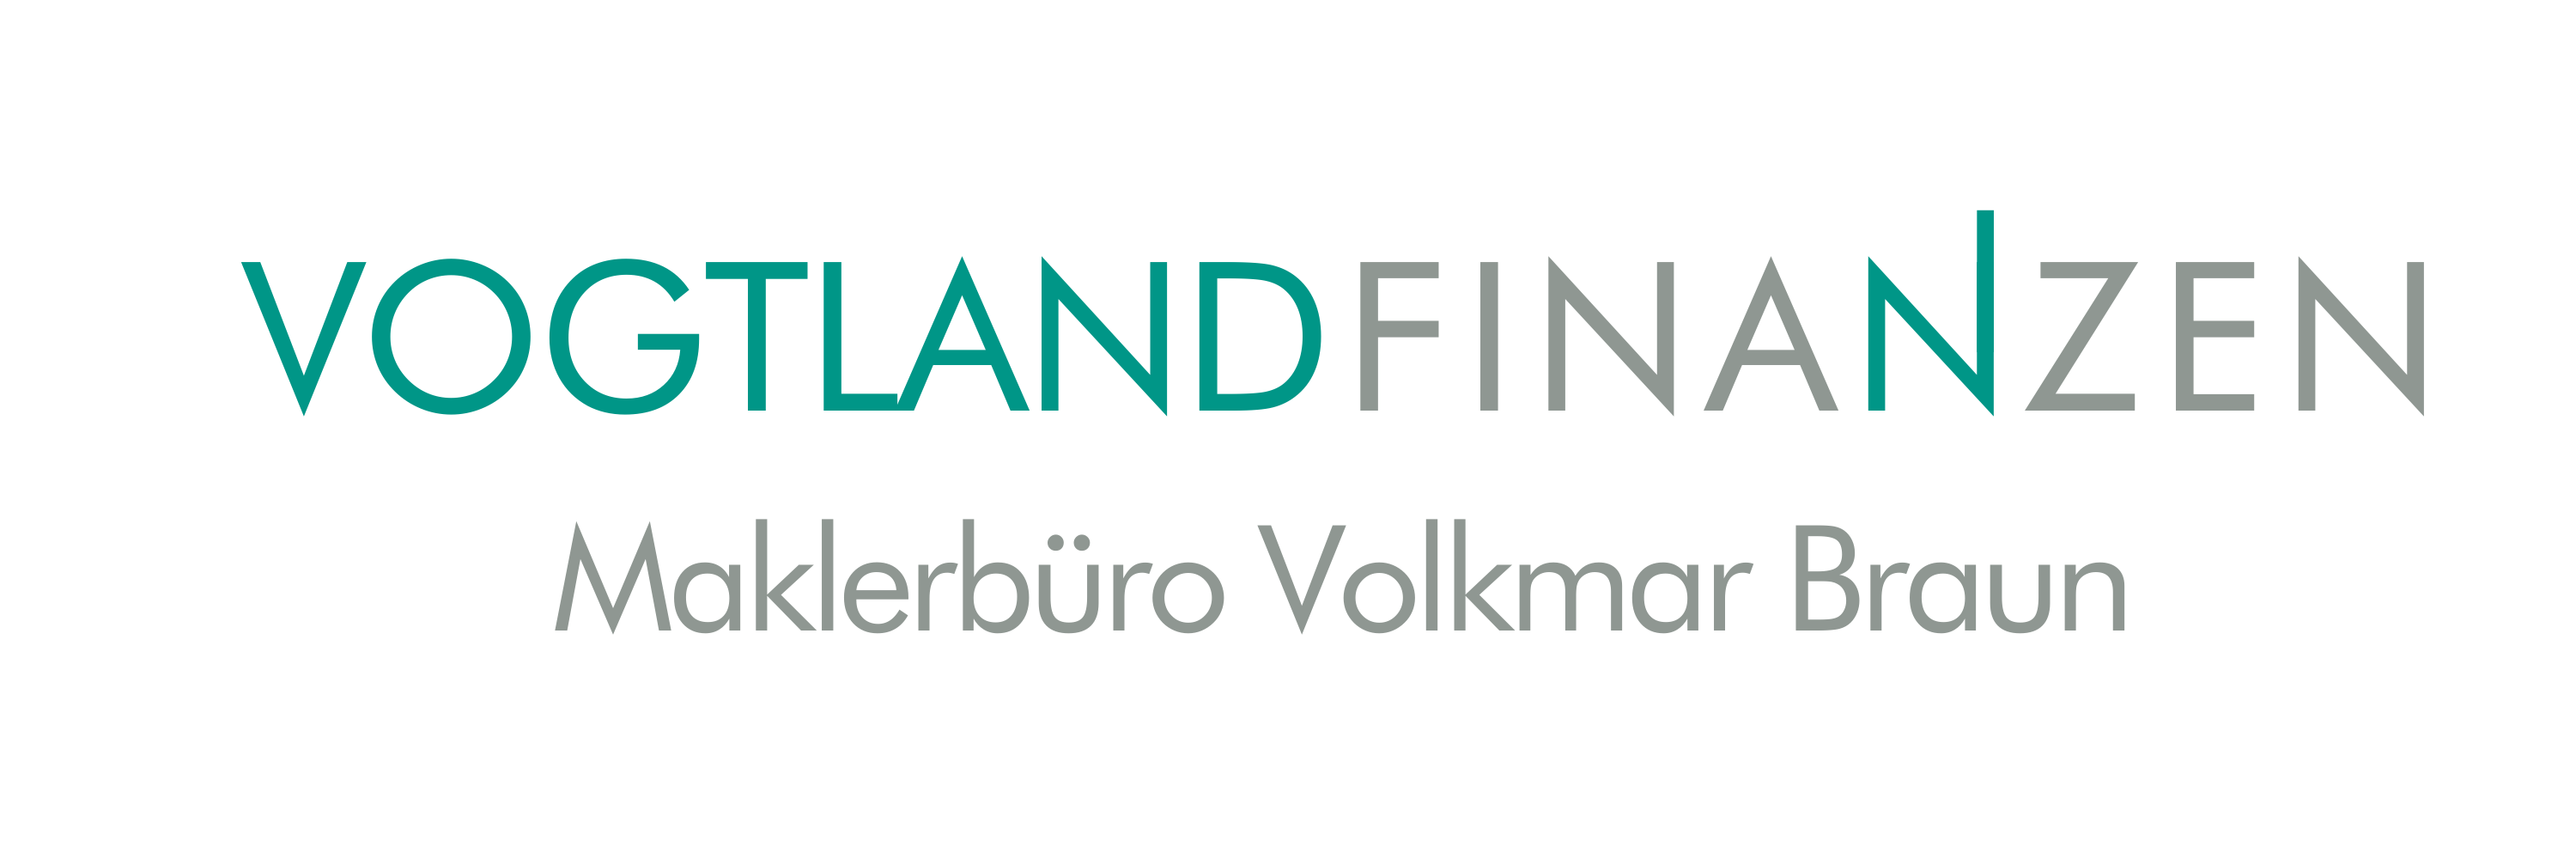 Vogtland Finanzen